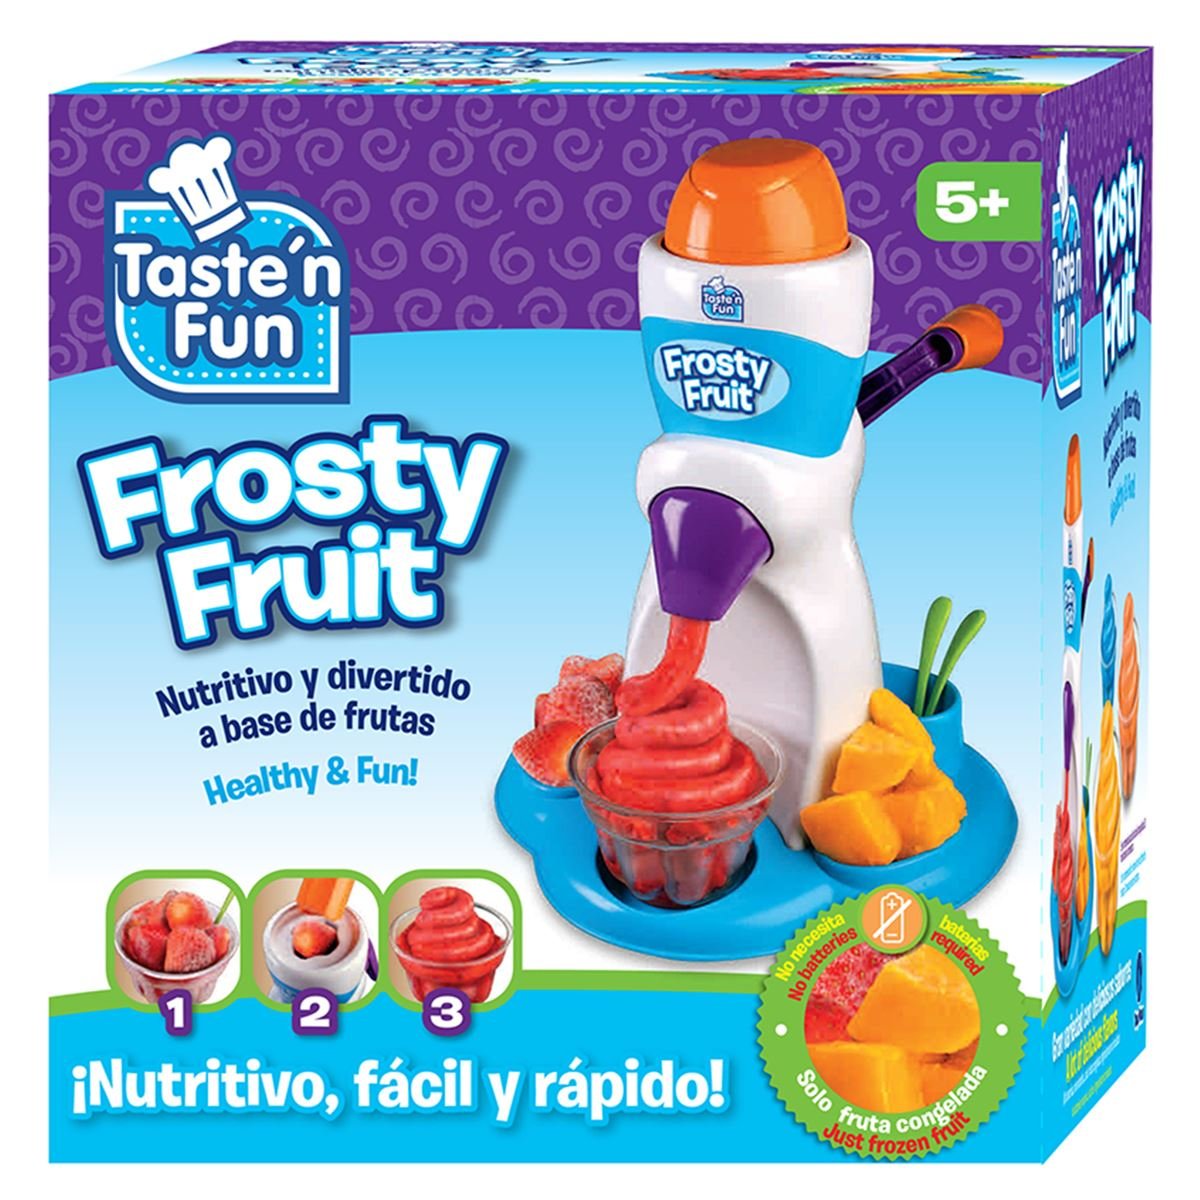 Taste&#180;N Fun Frosty Fruit